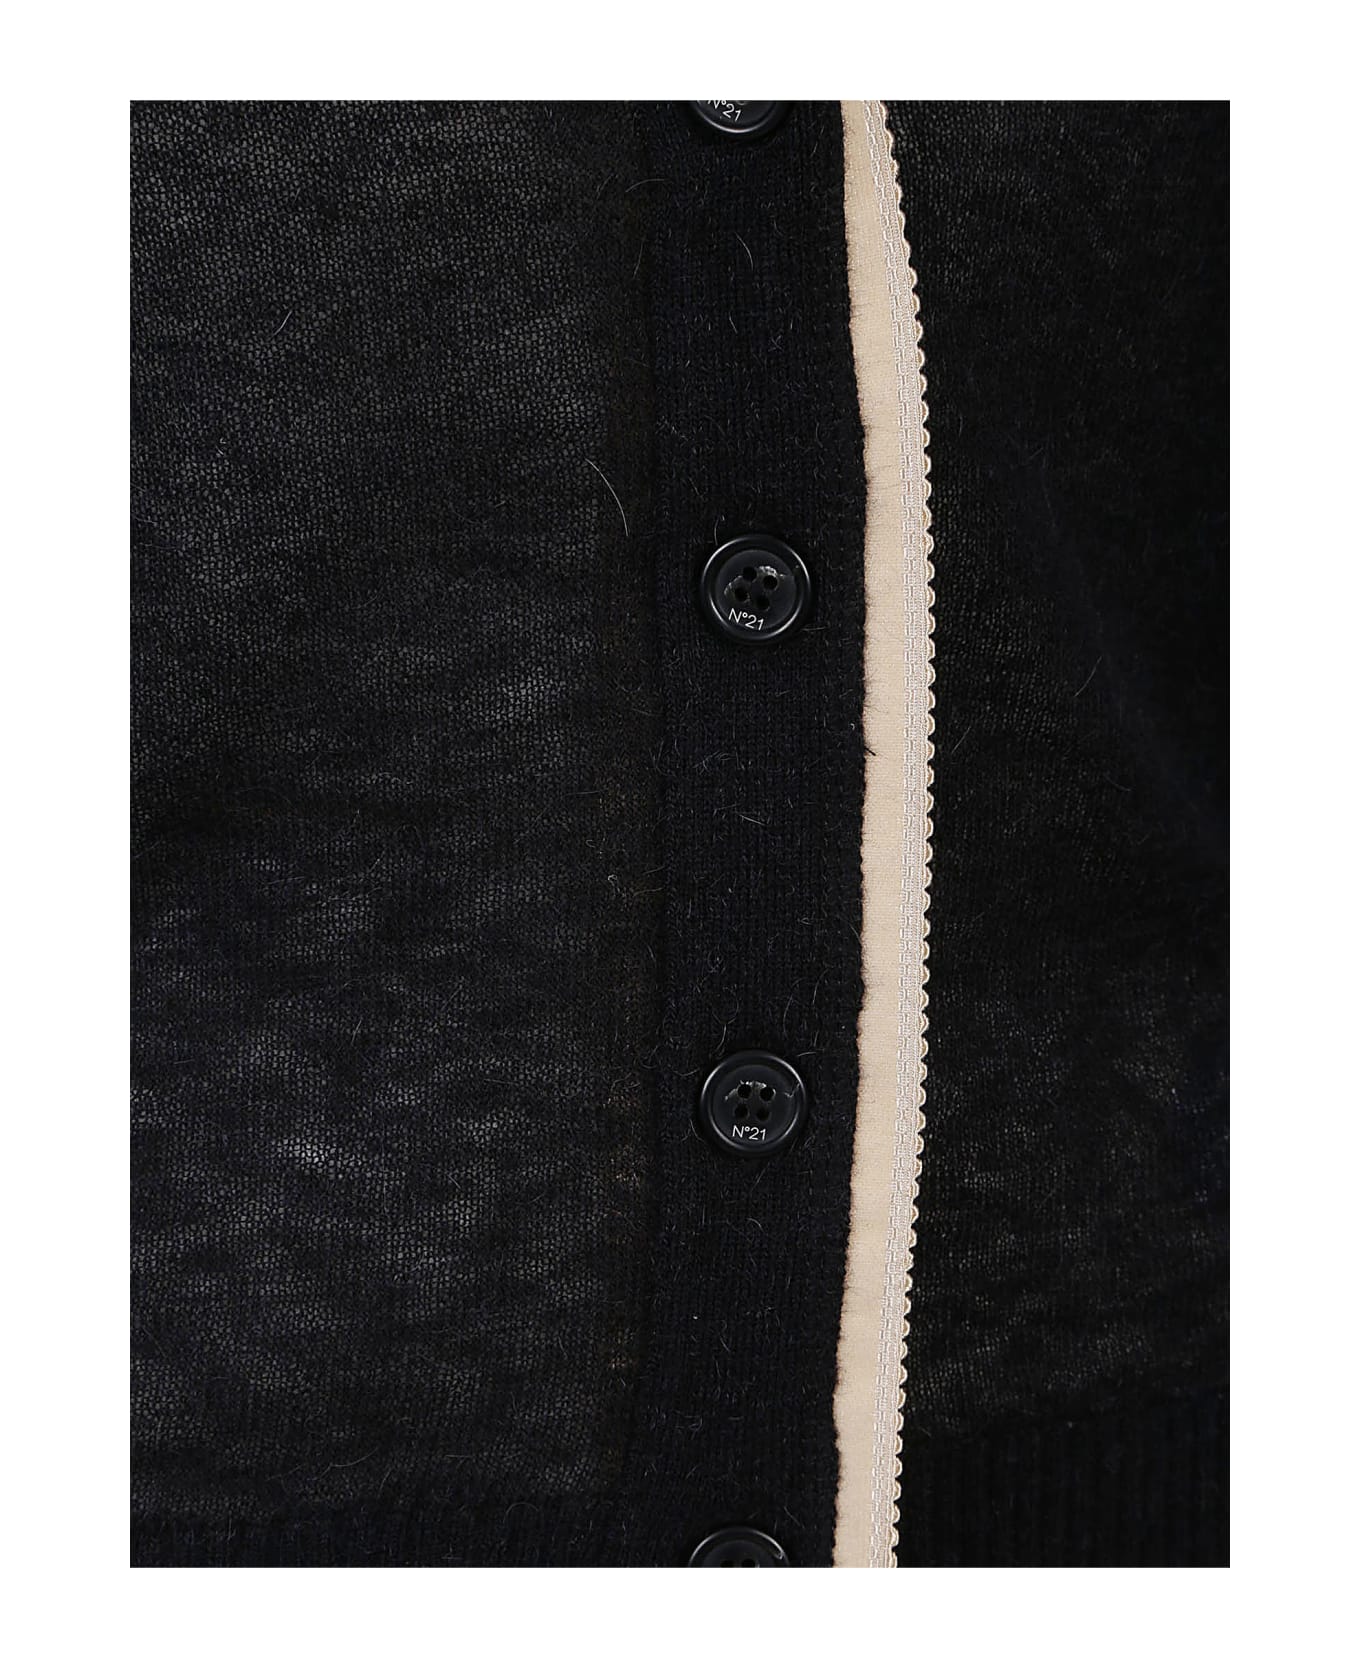 N.21 N°21 Sweaters Black - Black カーディガン